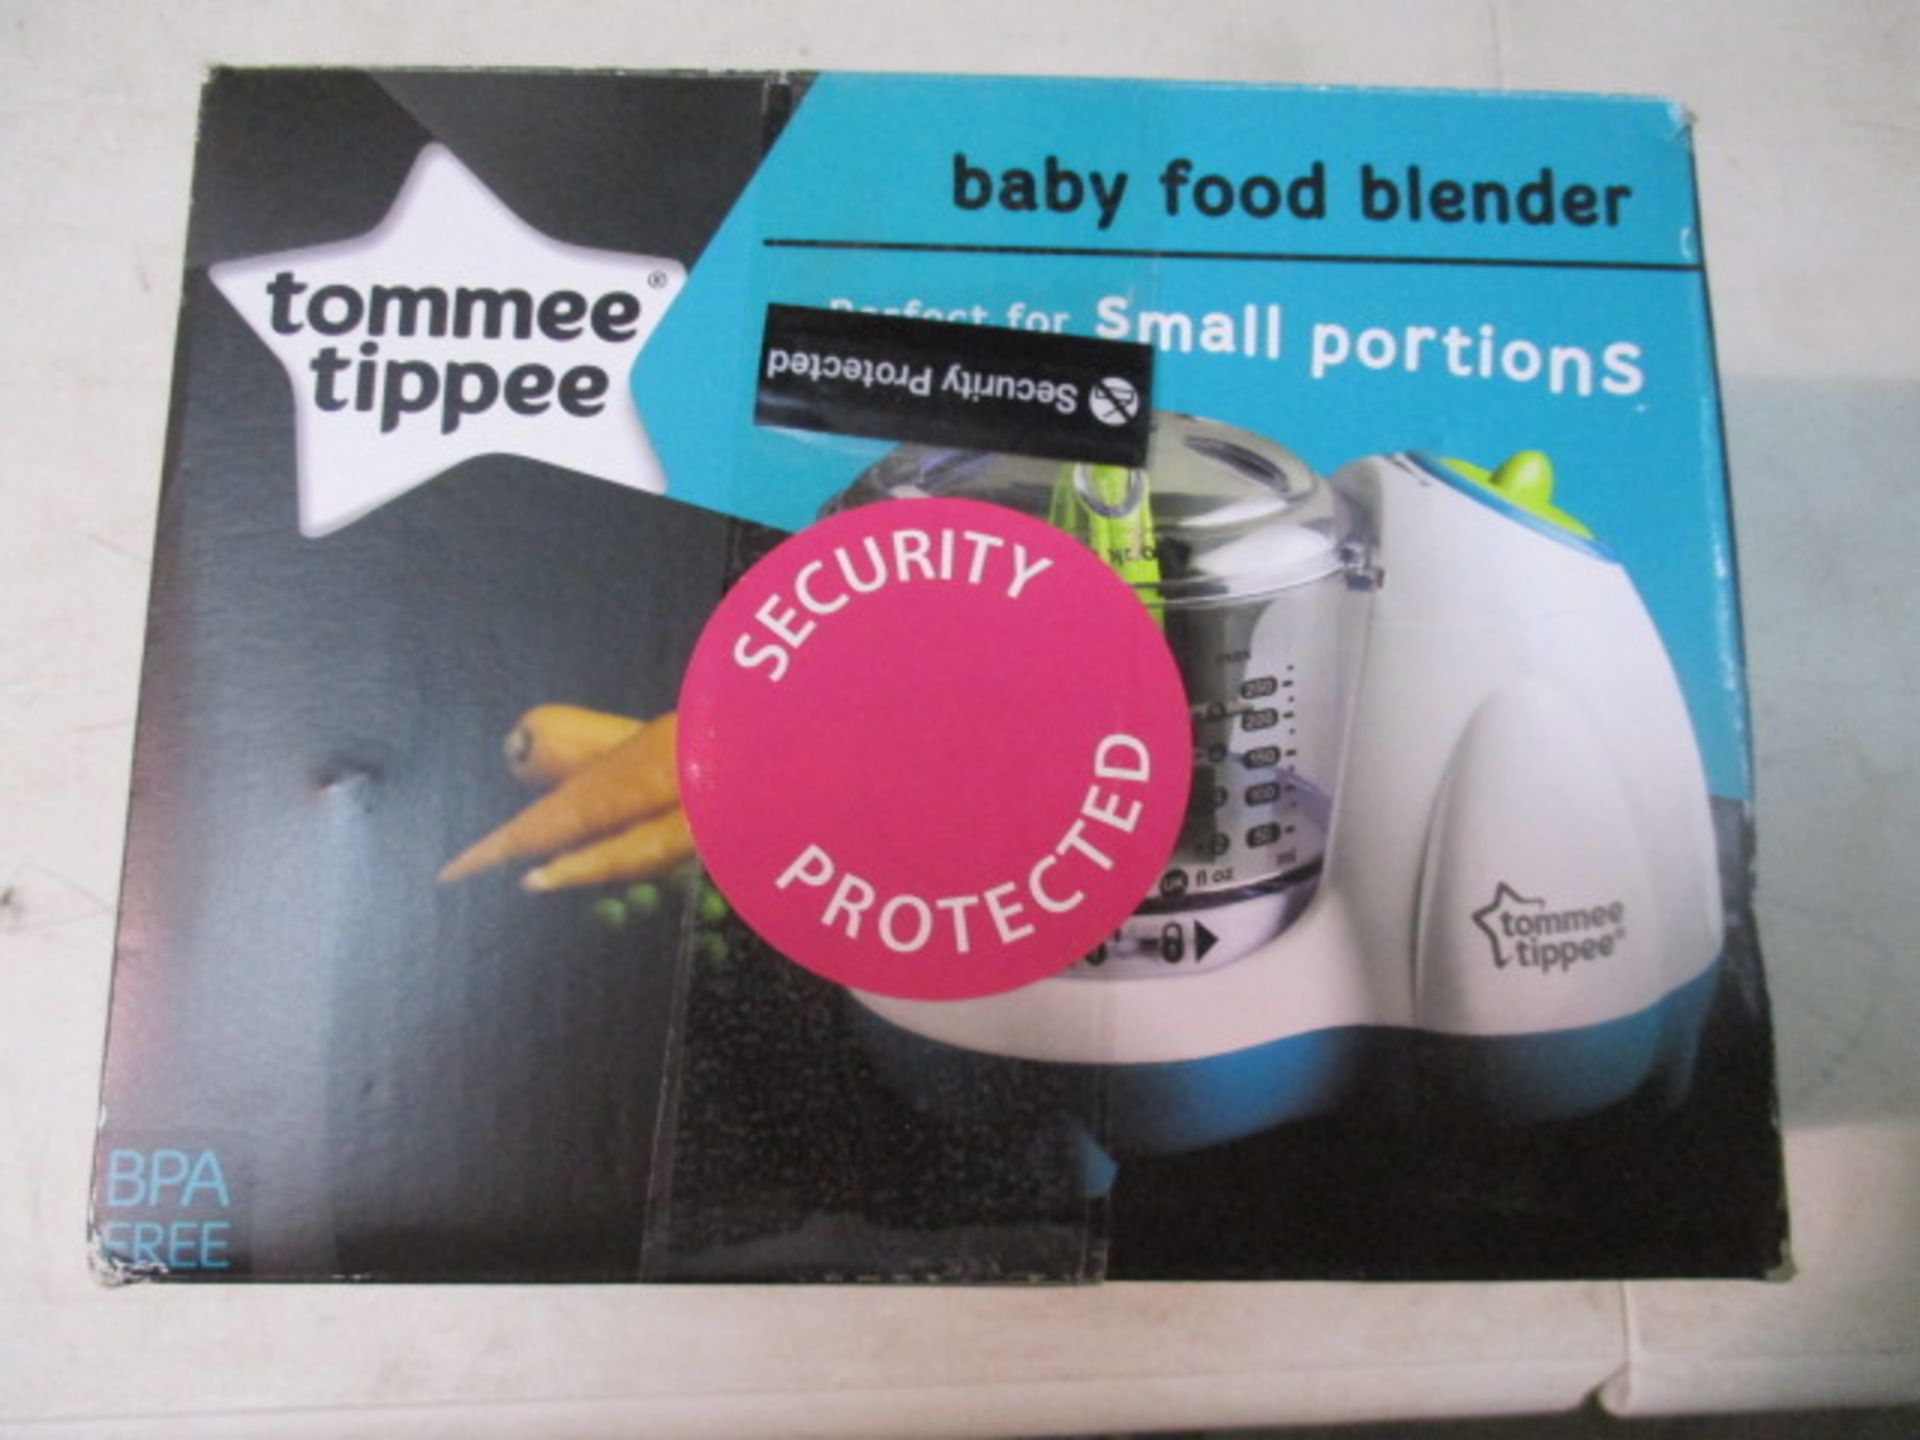 Tommee Tippee baby food blender